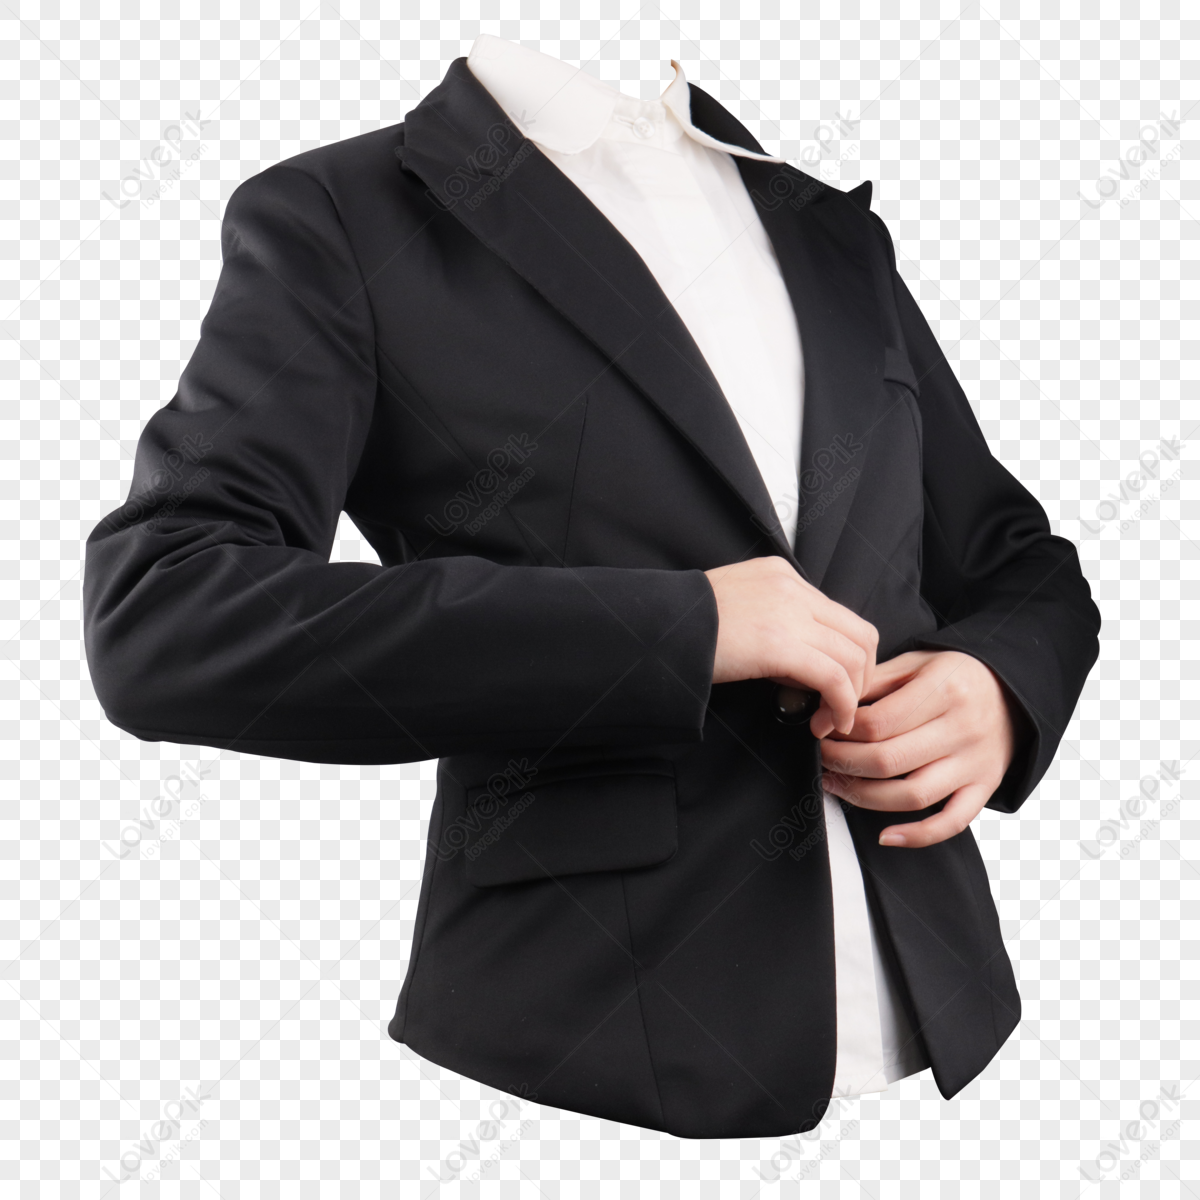 Black suit jacket finishing,business attire,cloth,business suit png transparent image